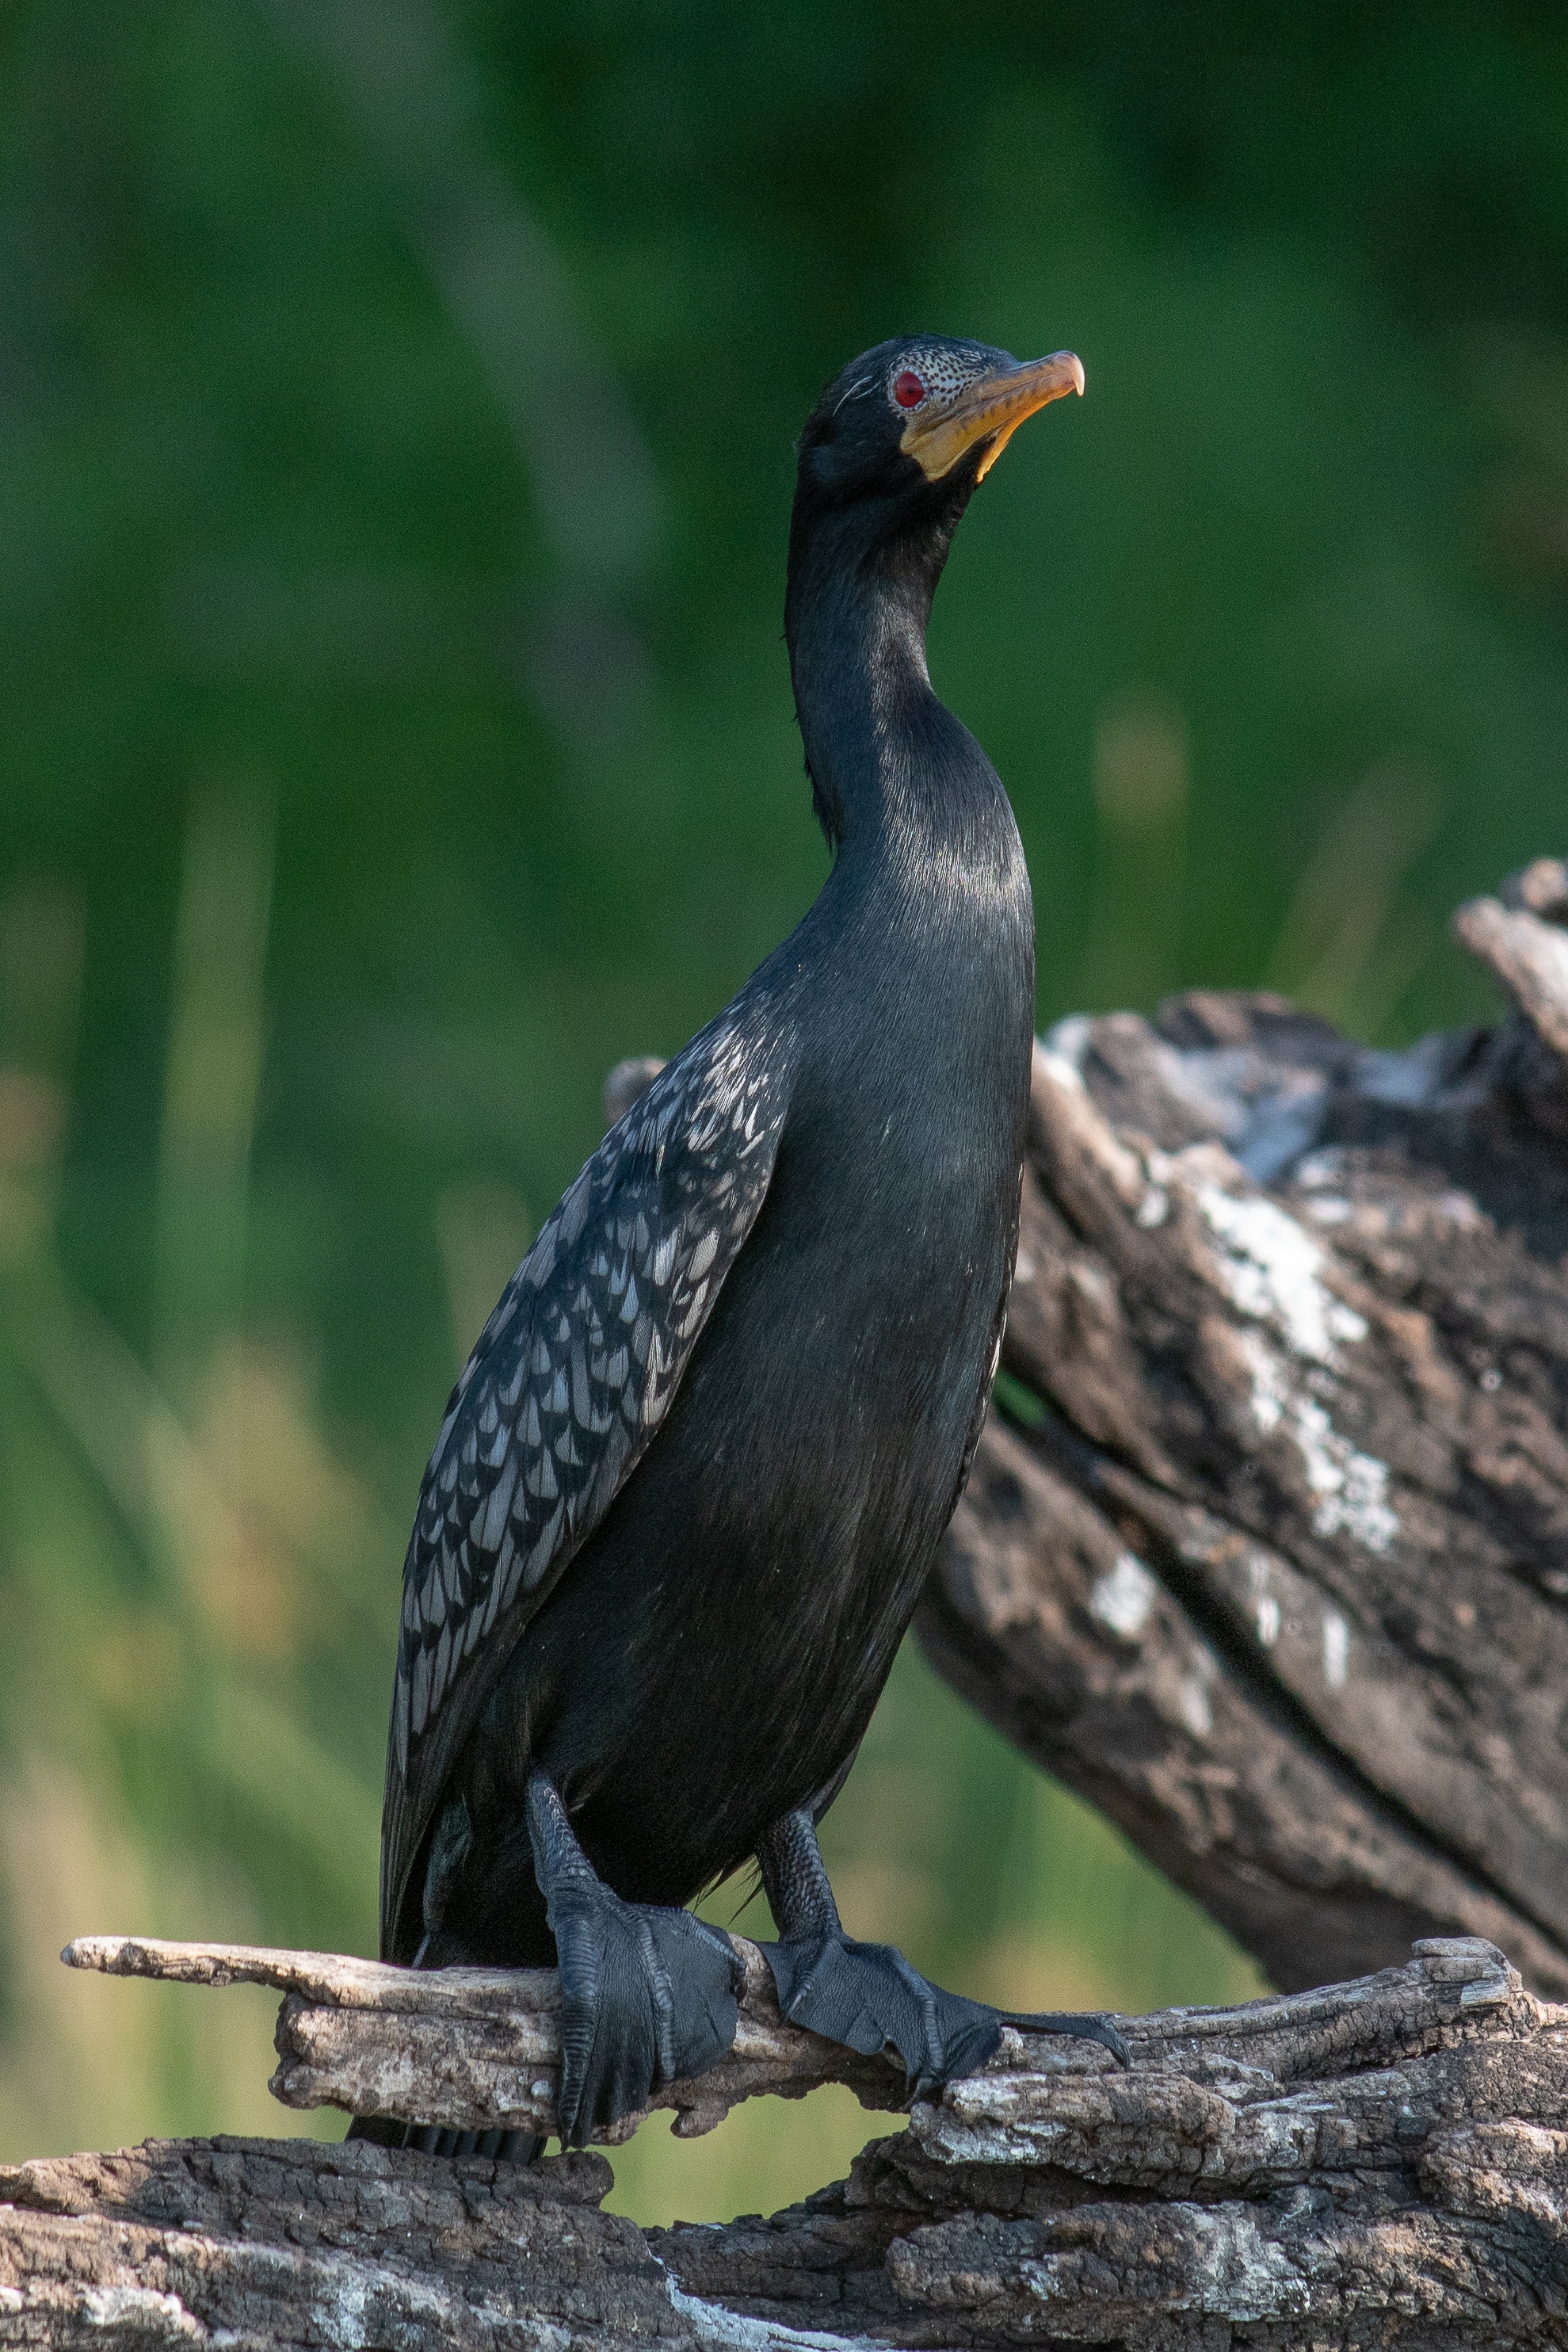 Reed cormorant, Chobe River, Namibia